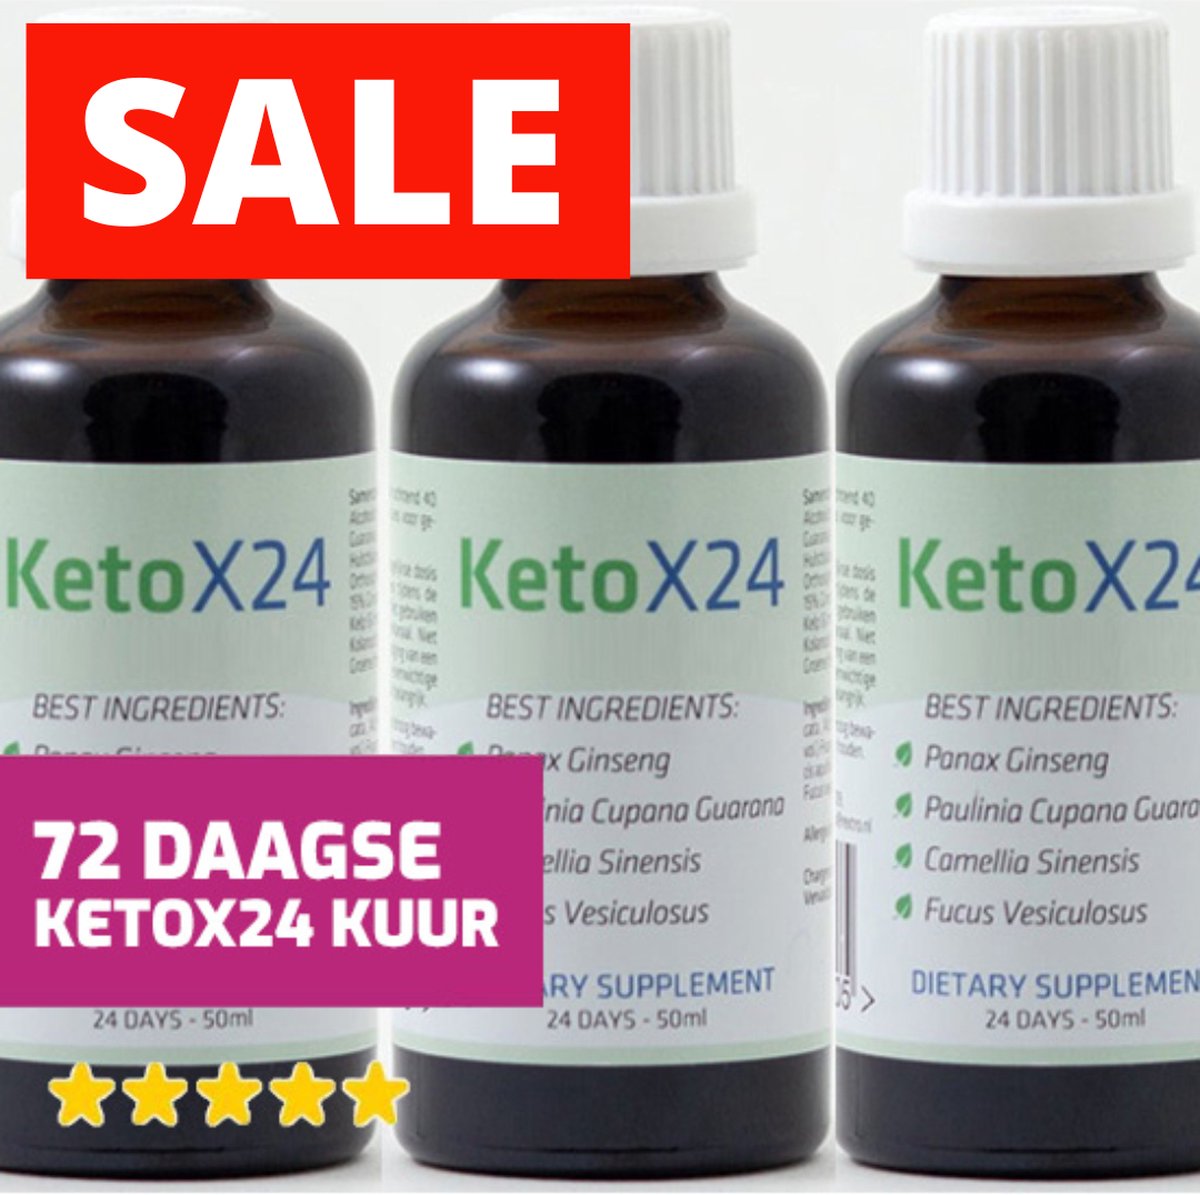 Ketox24 Afslankdruppels Triple actie | Met krachtige ingrediënten voor een mooi figuur - Ketox24